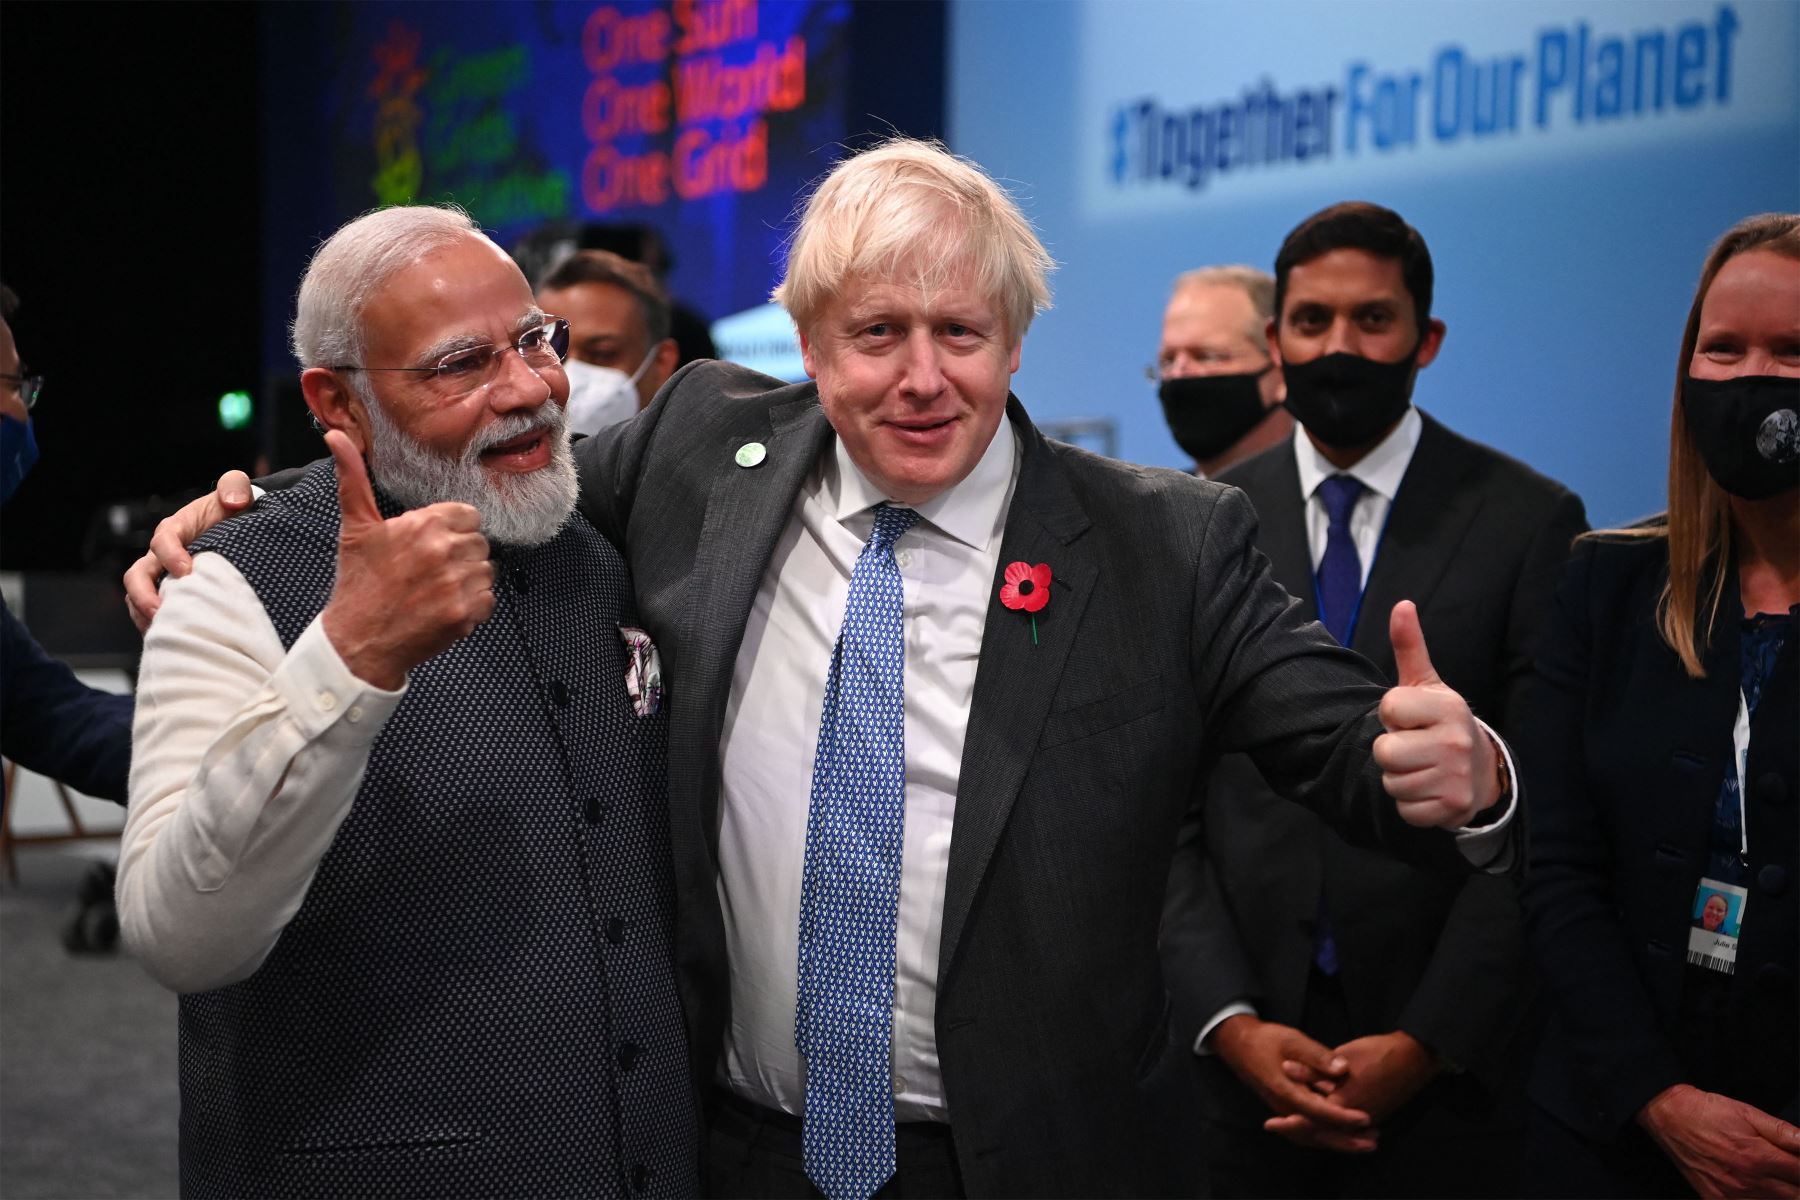 El primer ministro británico, Boris Johnson, y el primer ministro de la India, Narendra Modi, asisten a la sesión de la Cumbre Mundial de Líderes "Aceleración de la innovación y el despliegue de tecnologías limpias" durante la Conferencia sobre el clima COP26 en el Scottish Event Campus en Glasgow, Escocia.
Foto: AFP